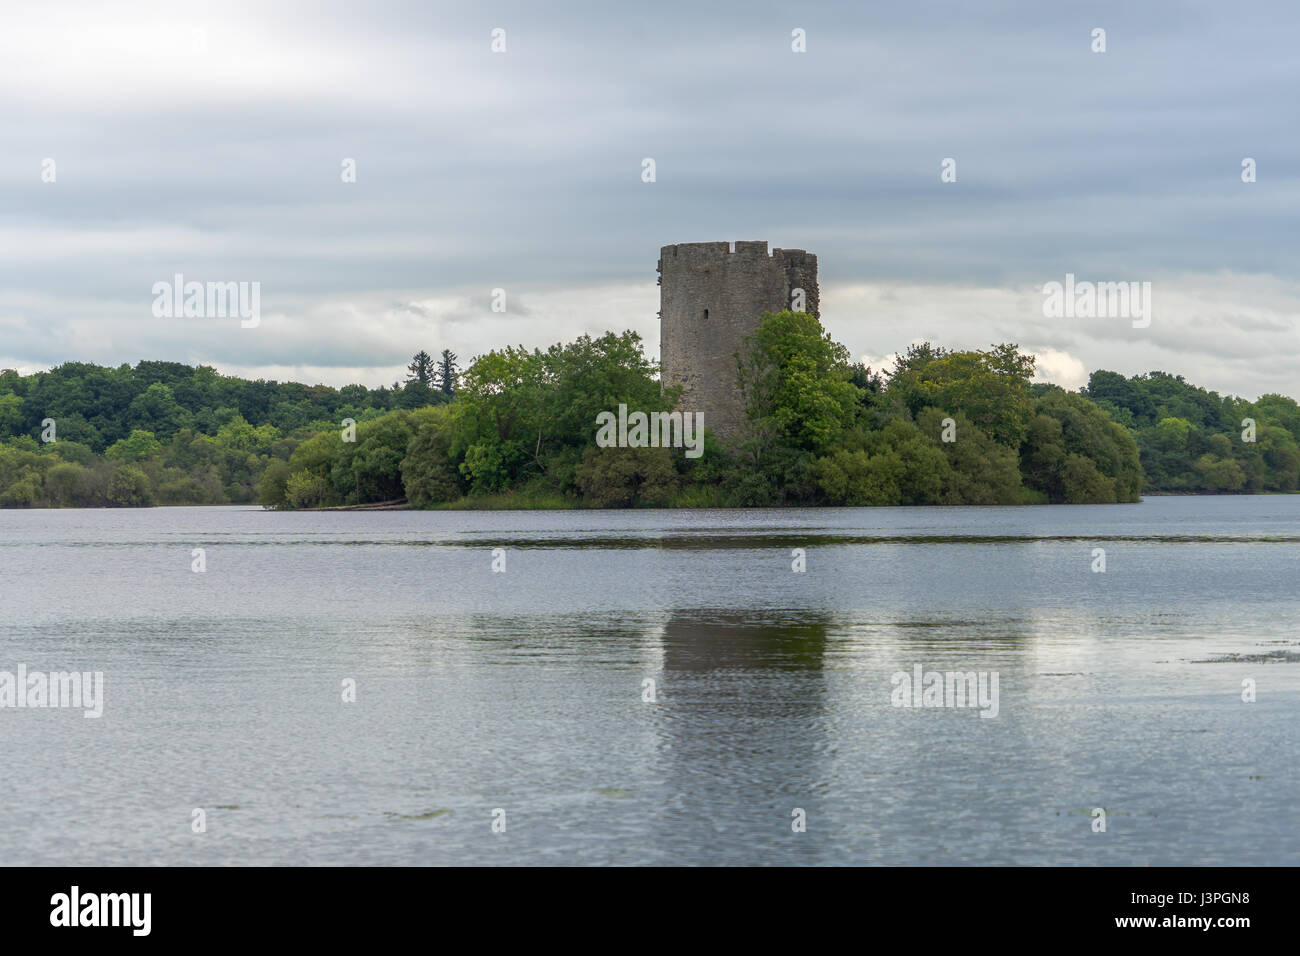 Un vieux château sur une île dans un lac en Irlande. Banque D'Images